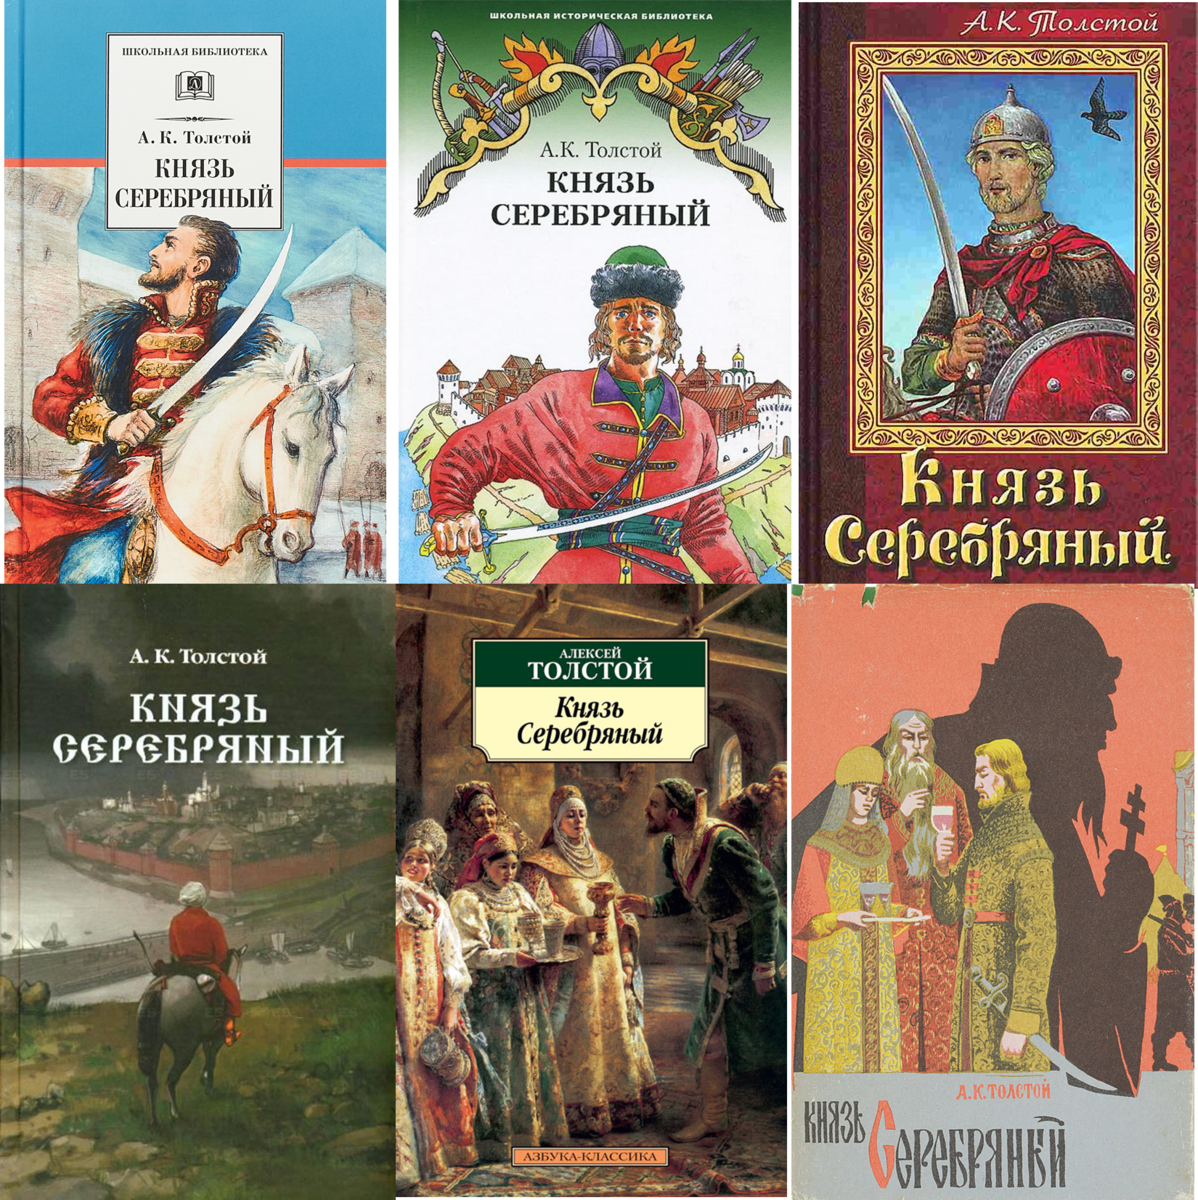 Обложки книг Алексея Константиновича Толстого. Известные исторические произведения